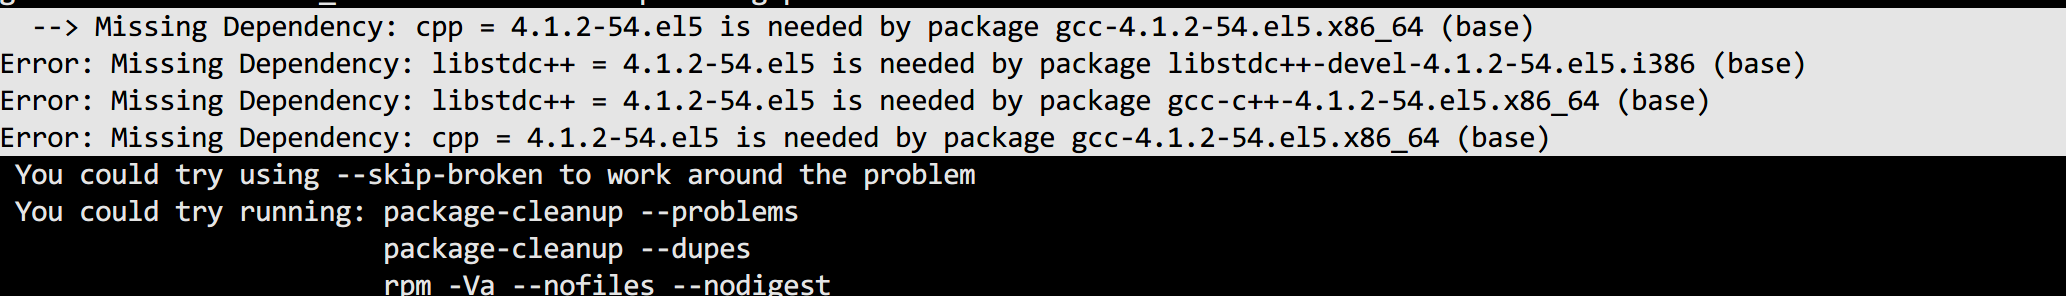 CentOS 5 2020年 编译安装NGINX，碰到的GCC问题